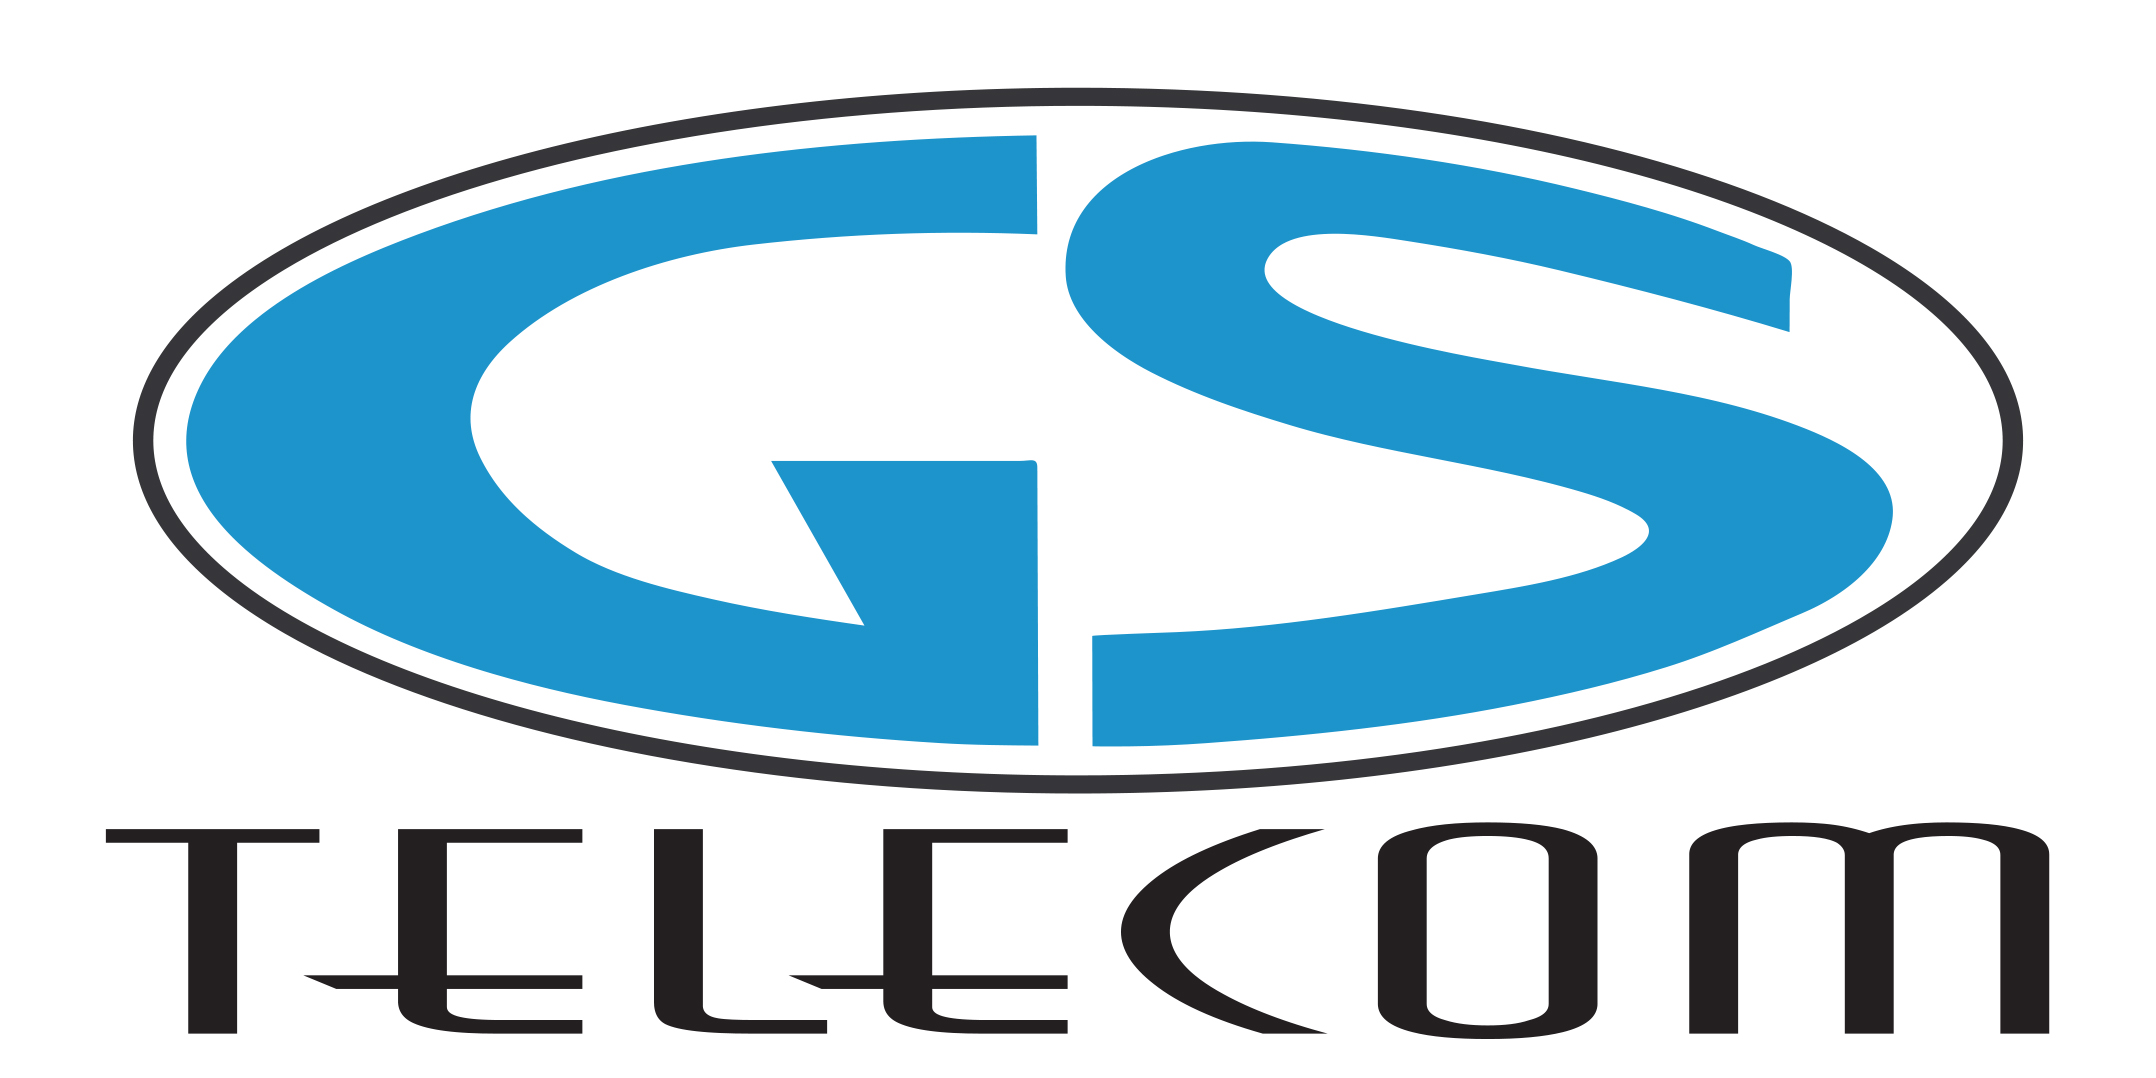 GS telecom